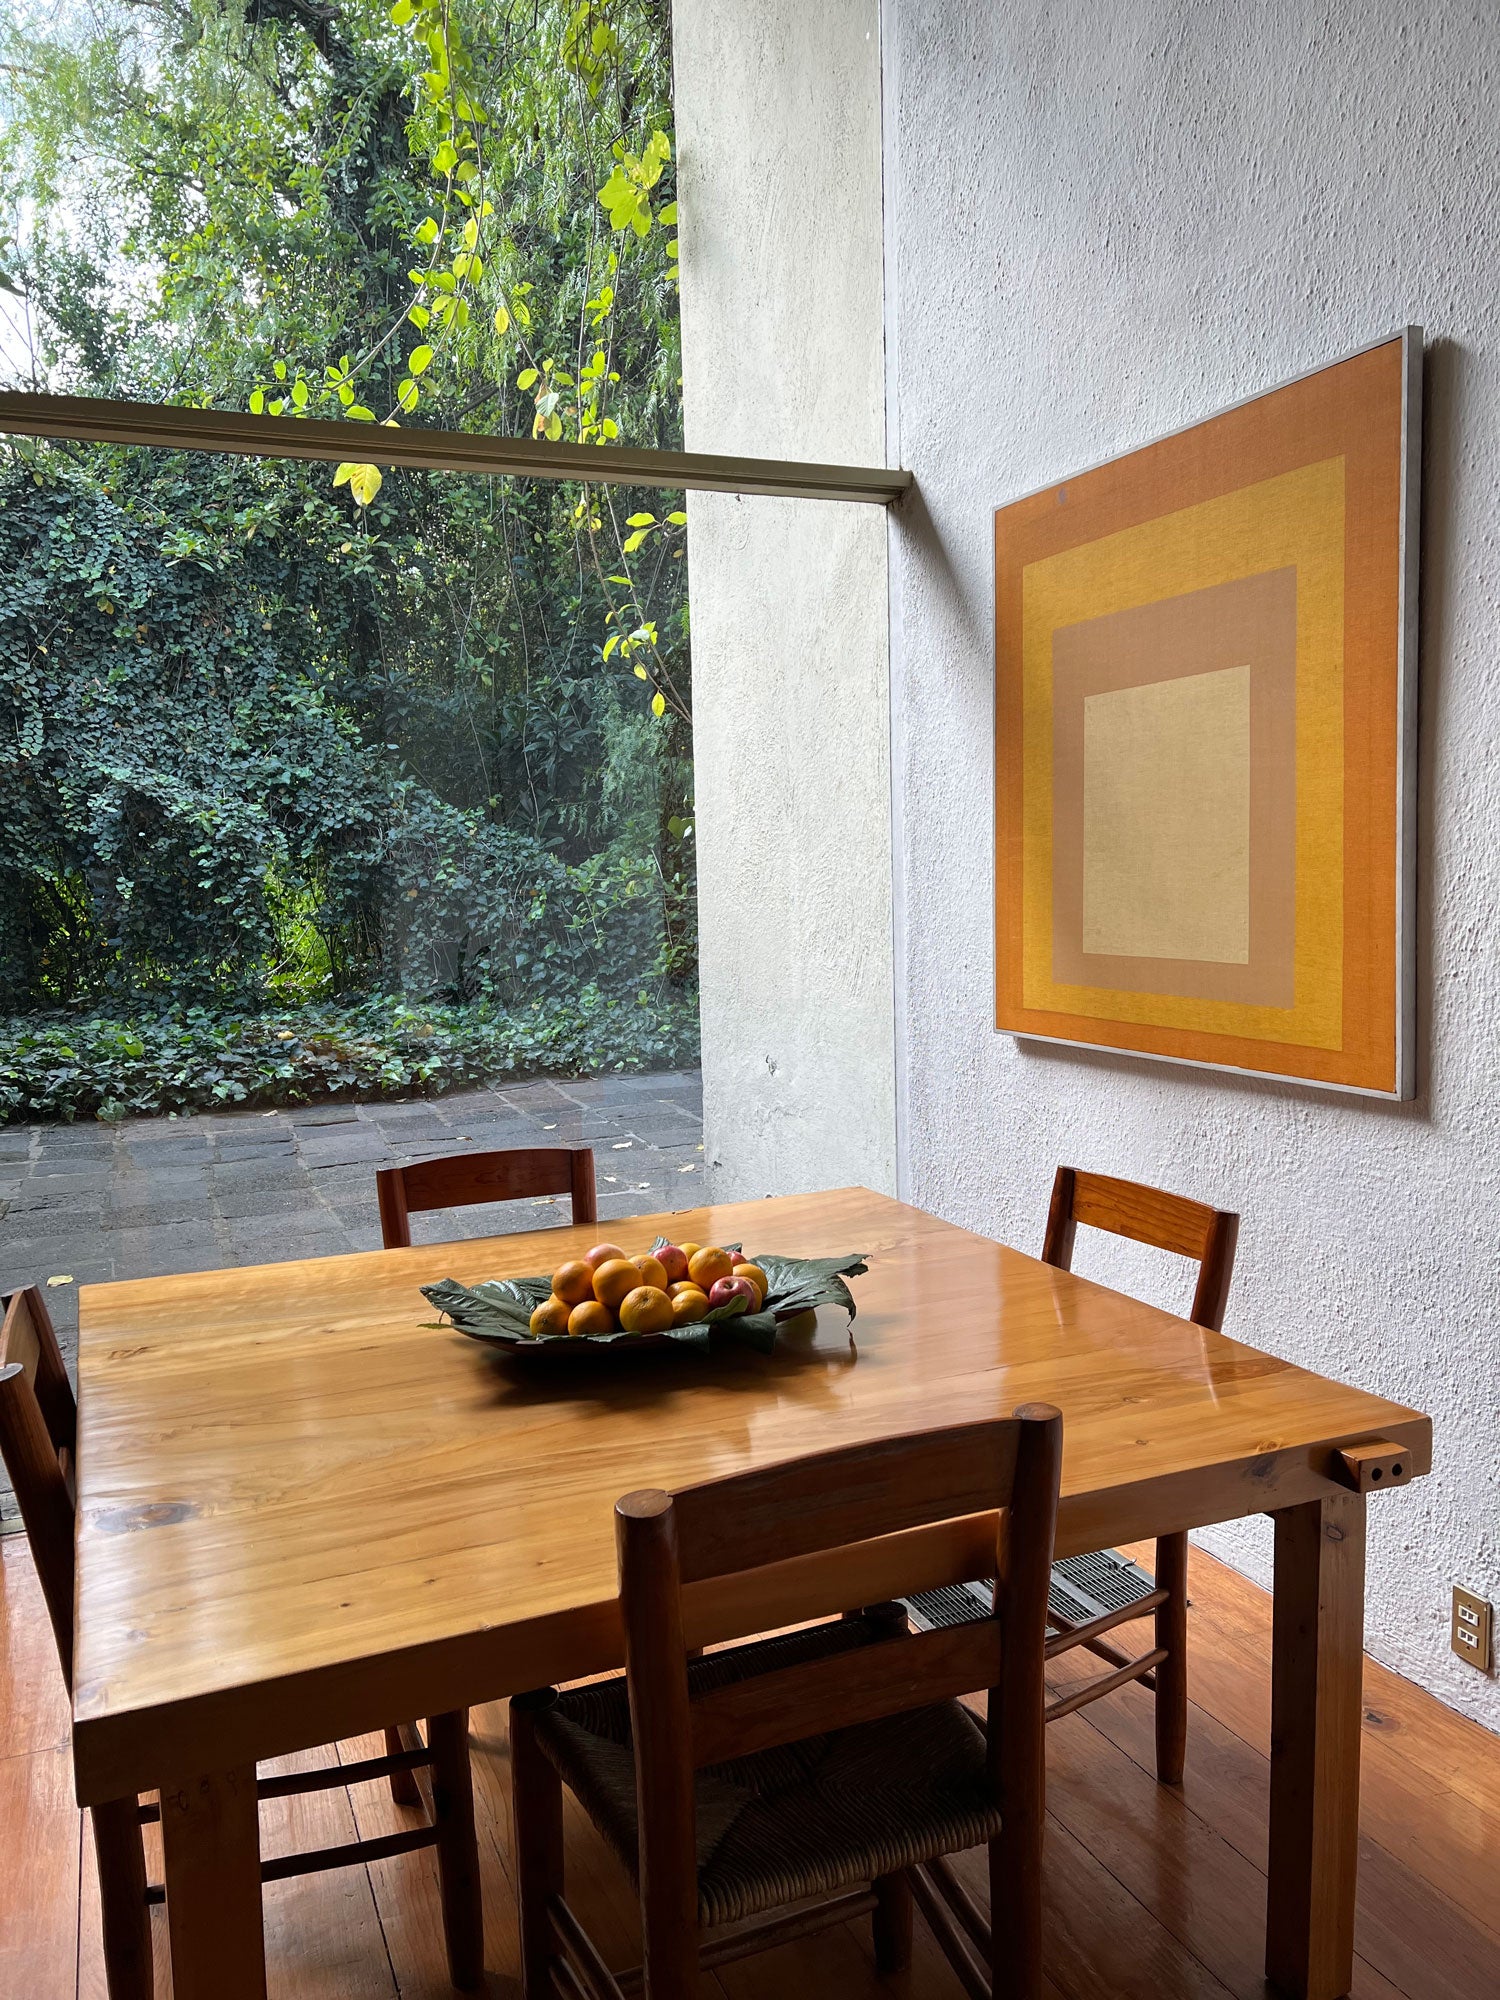 Josef Albers in Luis Barragan's home Mexico City